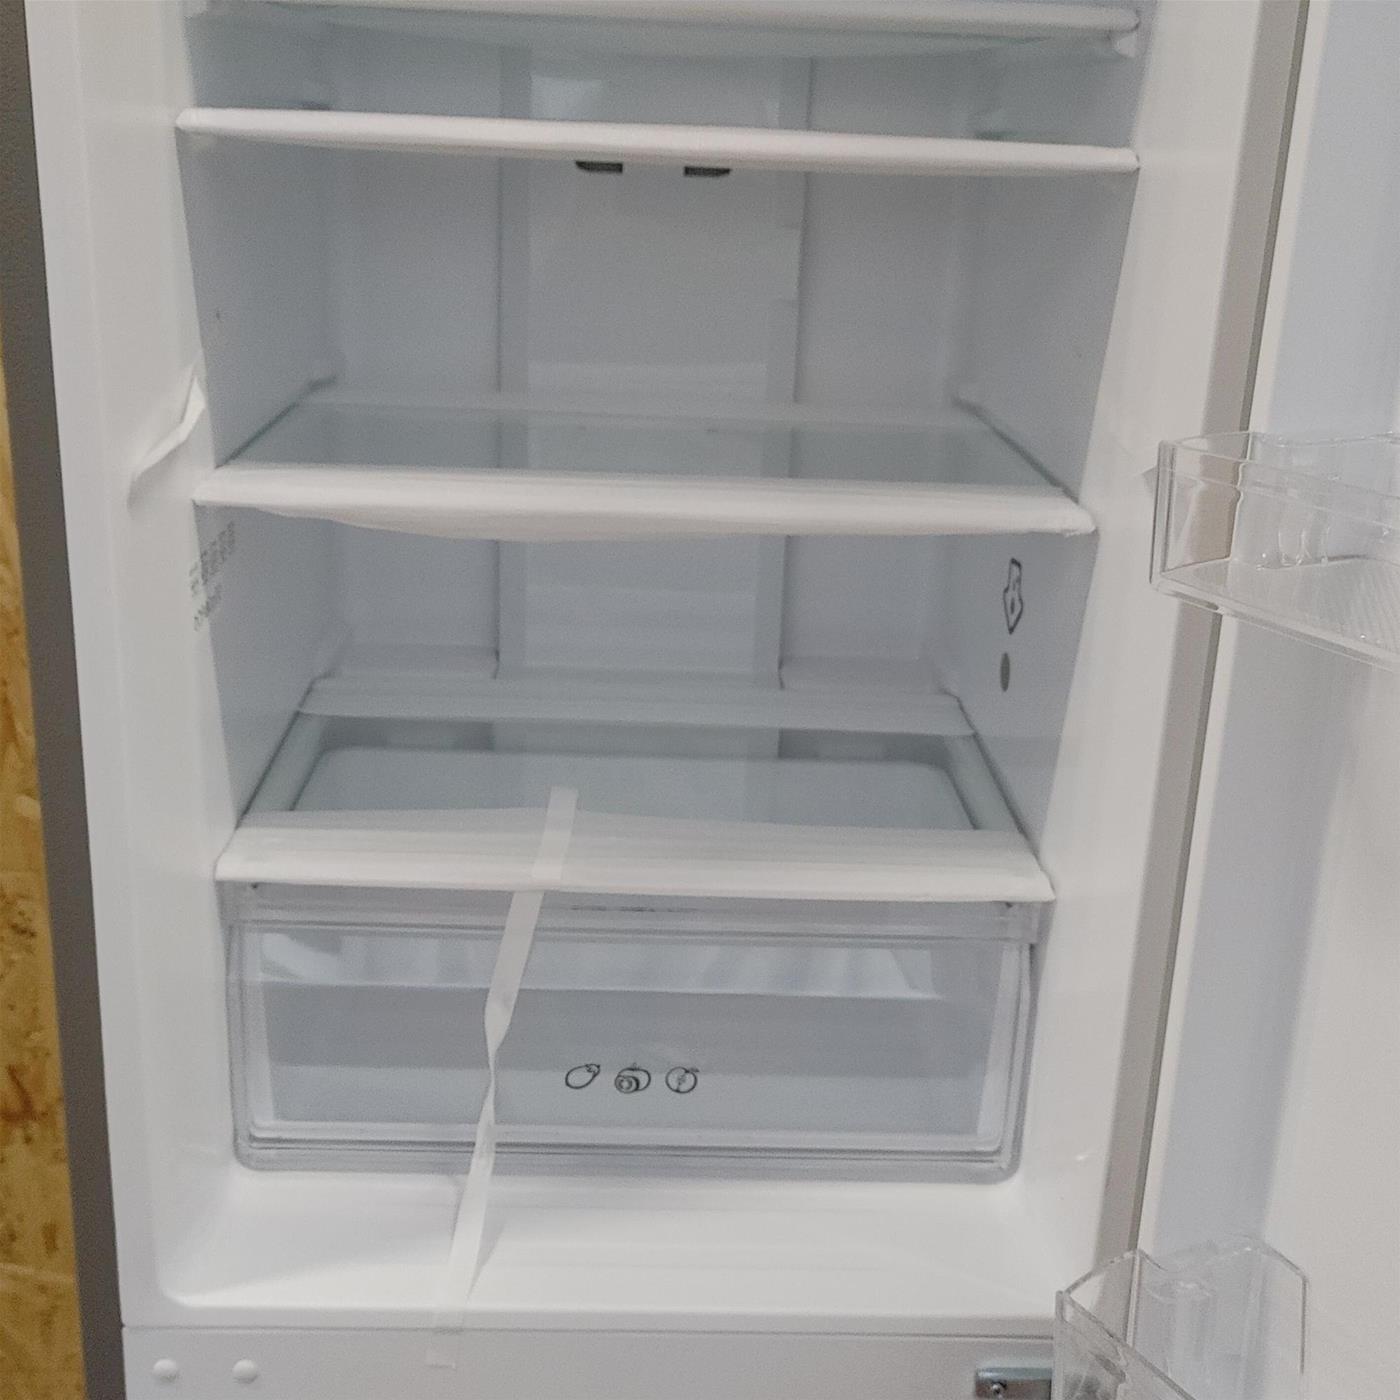 Candy CMICN 5182XN frigorifero con congelatore Libera installazione 270 L F Acciaio inossidabile